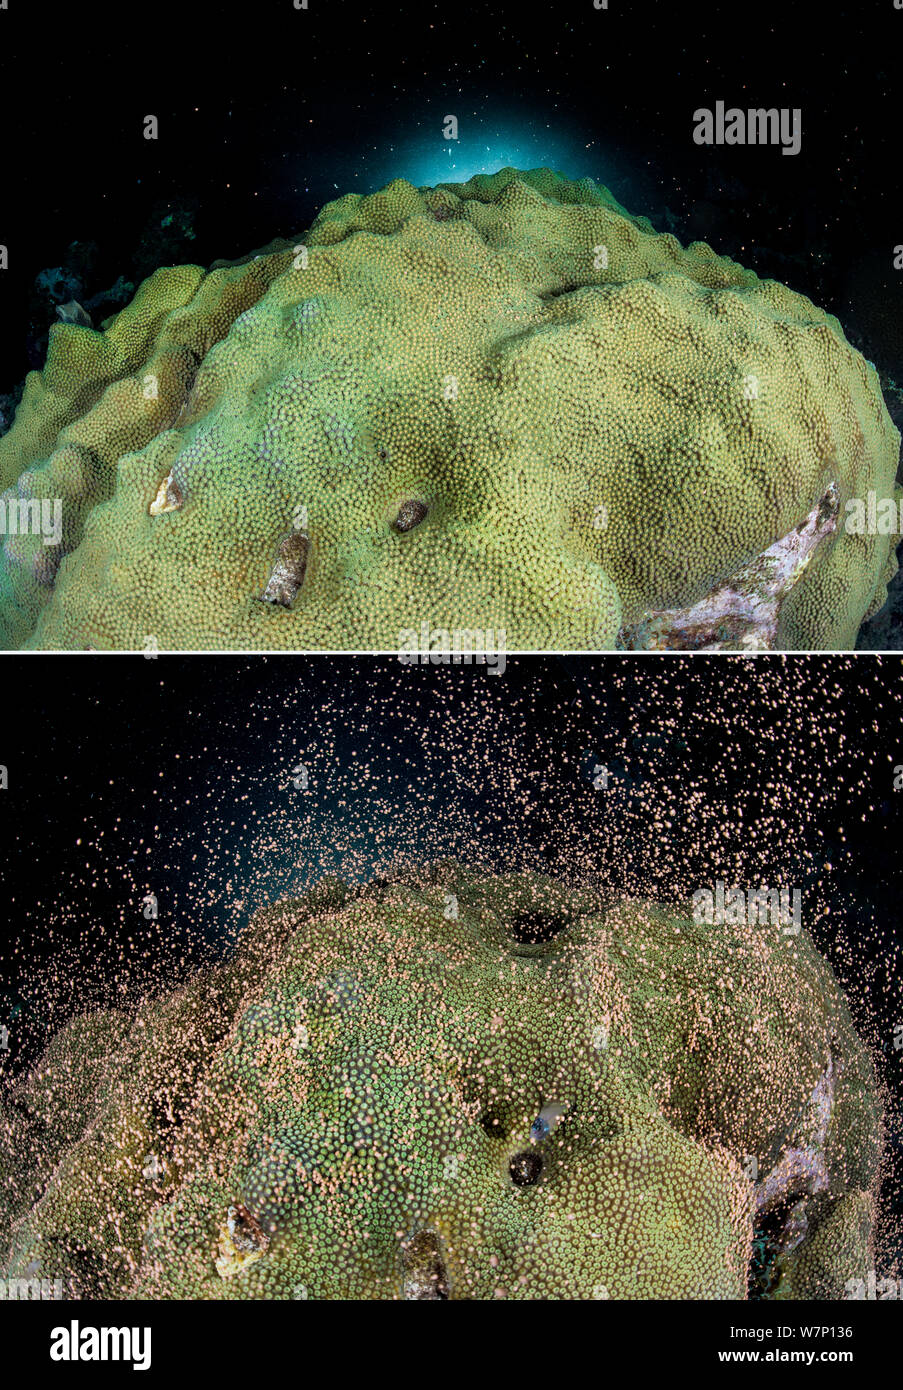 Due immagini della stessa colonia di montuoso stelle coral (Montastraea faveolata) la deposizione delle uova di notte su una barriera corallina che mostra i fasci di uova e sperma prima e dopo la deposizione delle uova sincrono release, East End, Grand Cayman, Isole Cayman, British West Indies, Mar dei Caraibi. Foto Stock